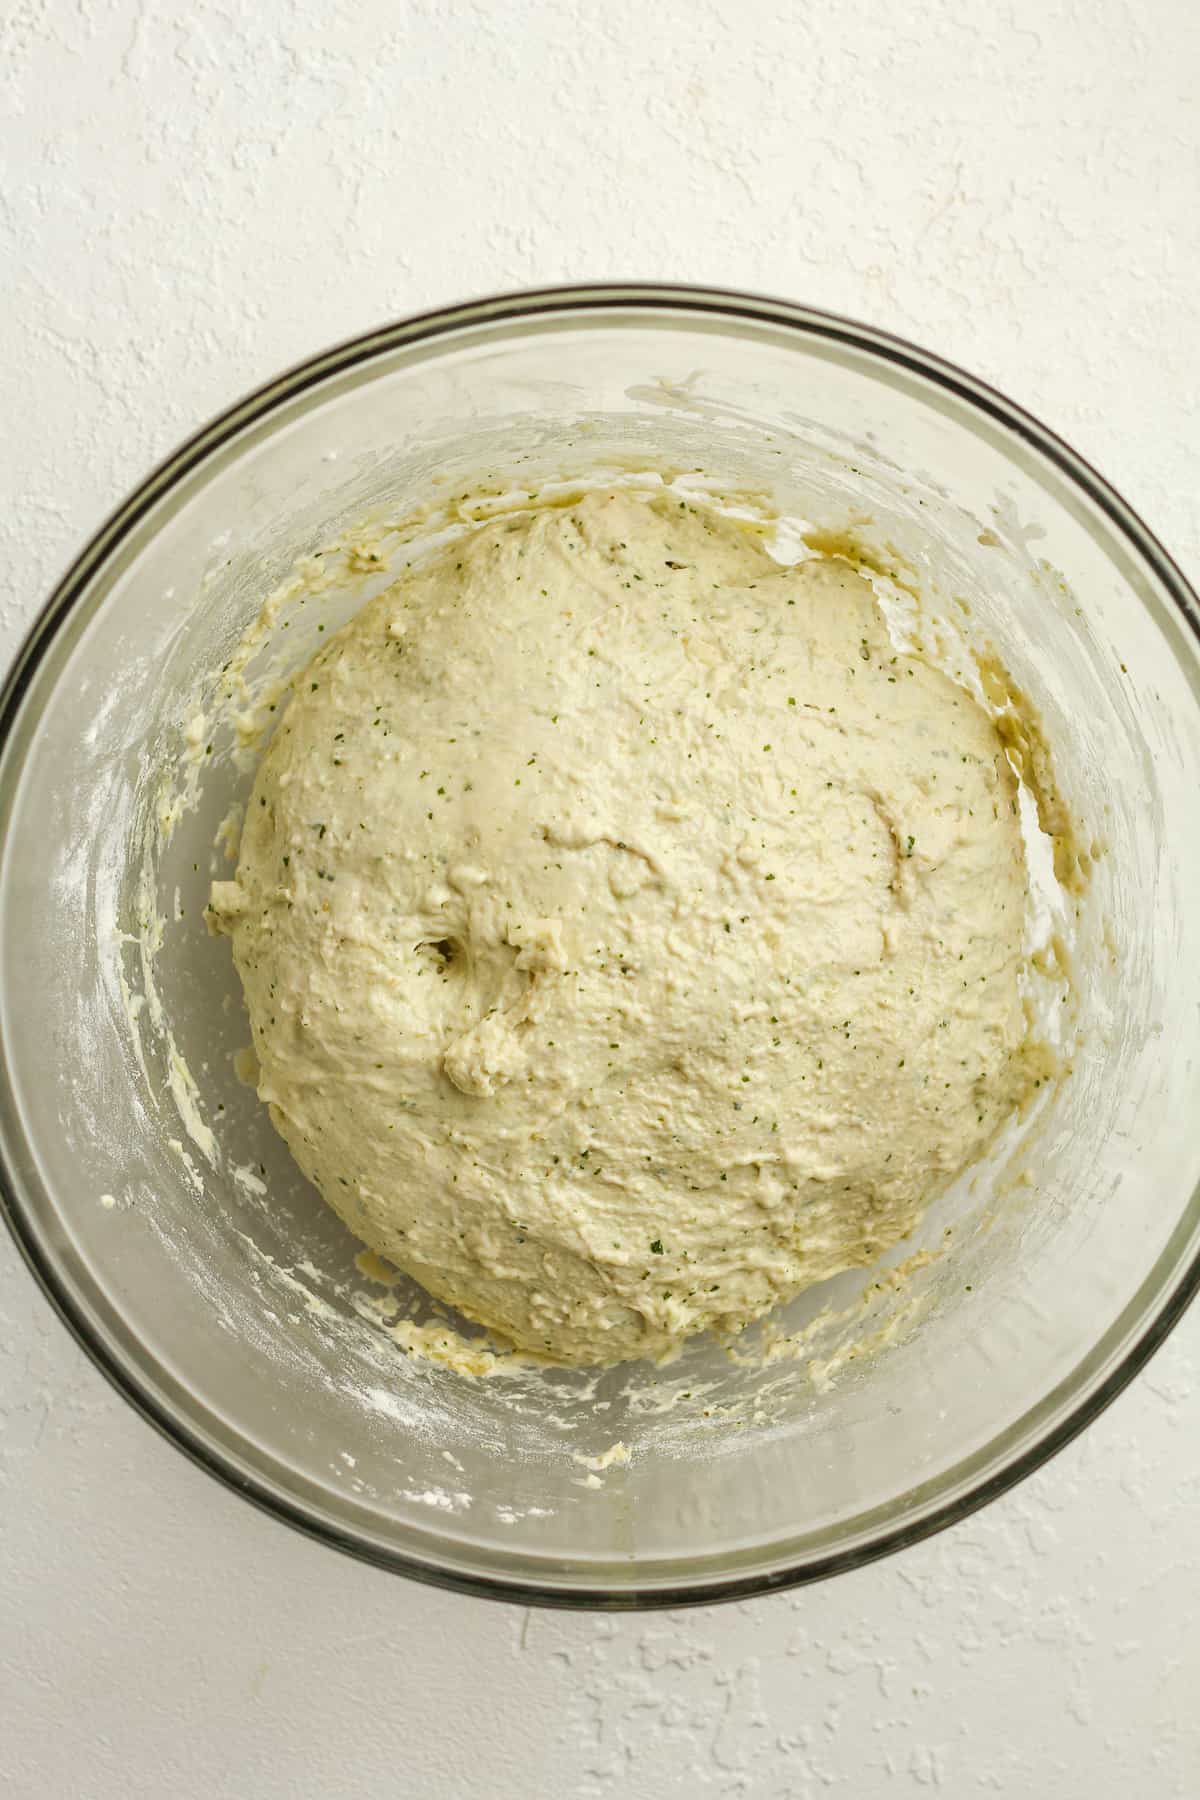 The sourdough focaccia dough ready to rise.